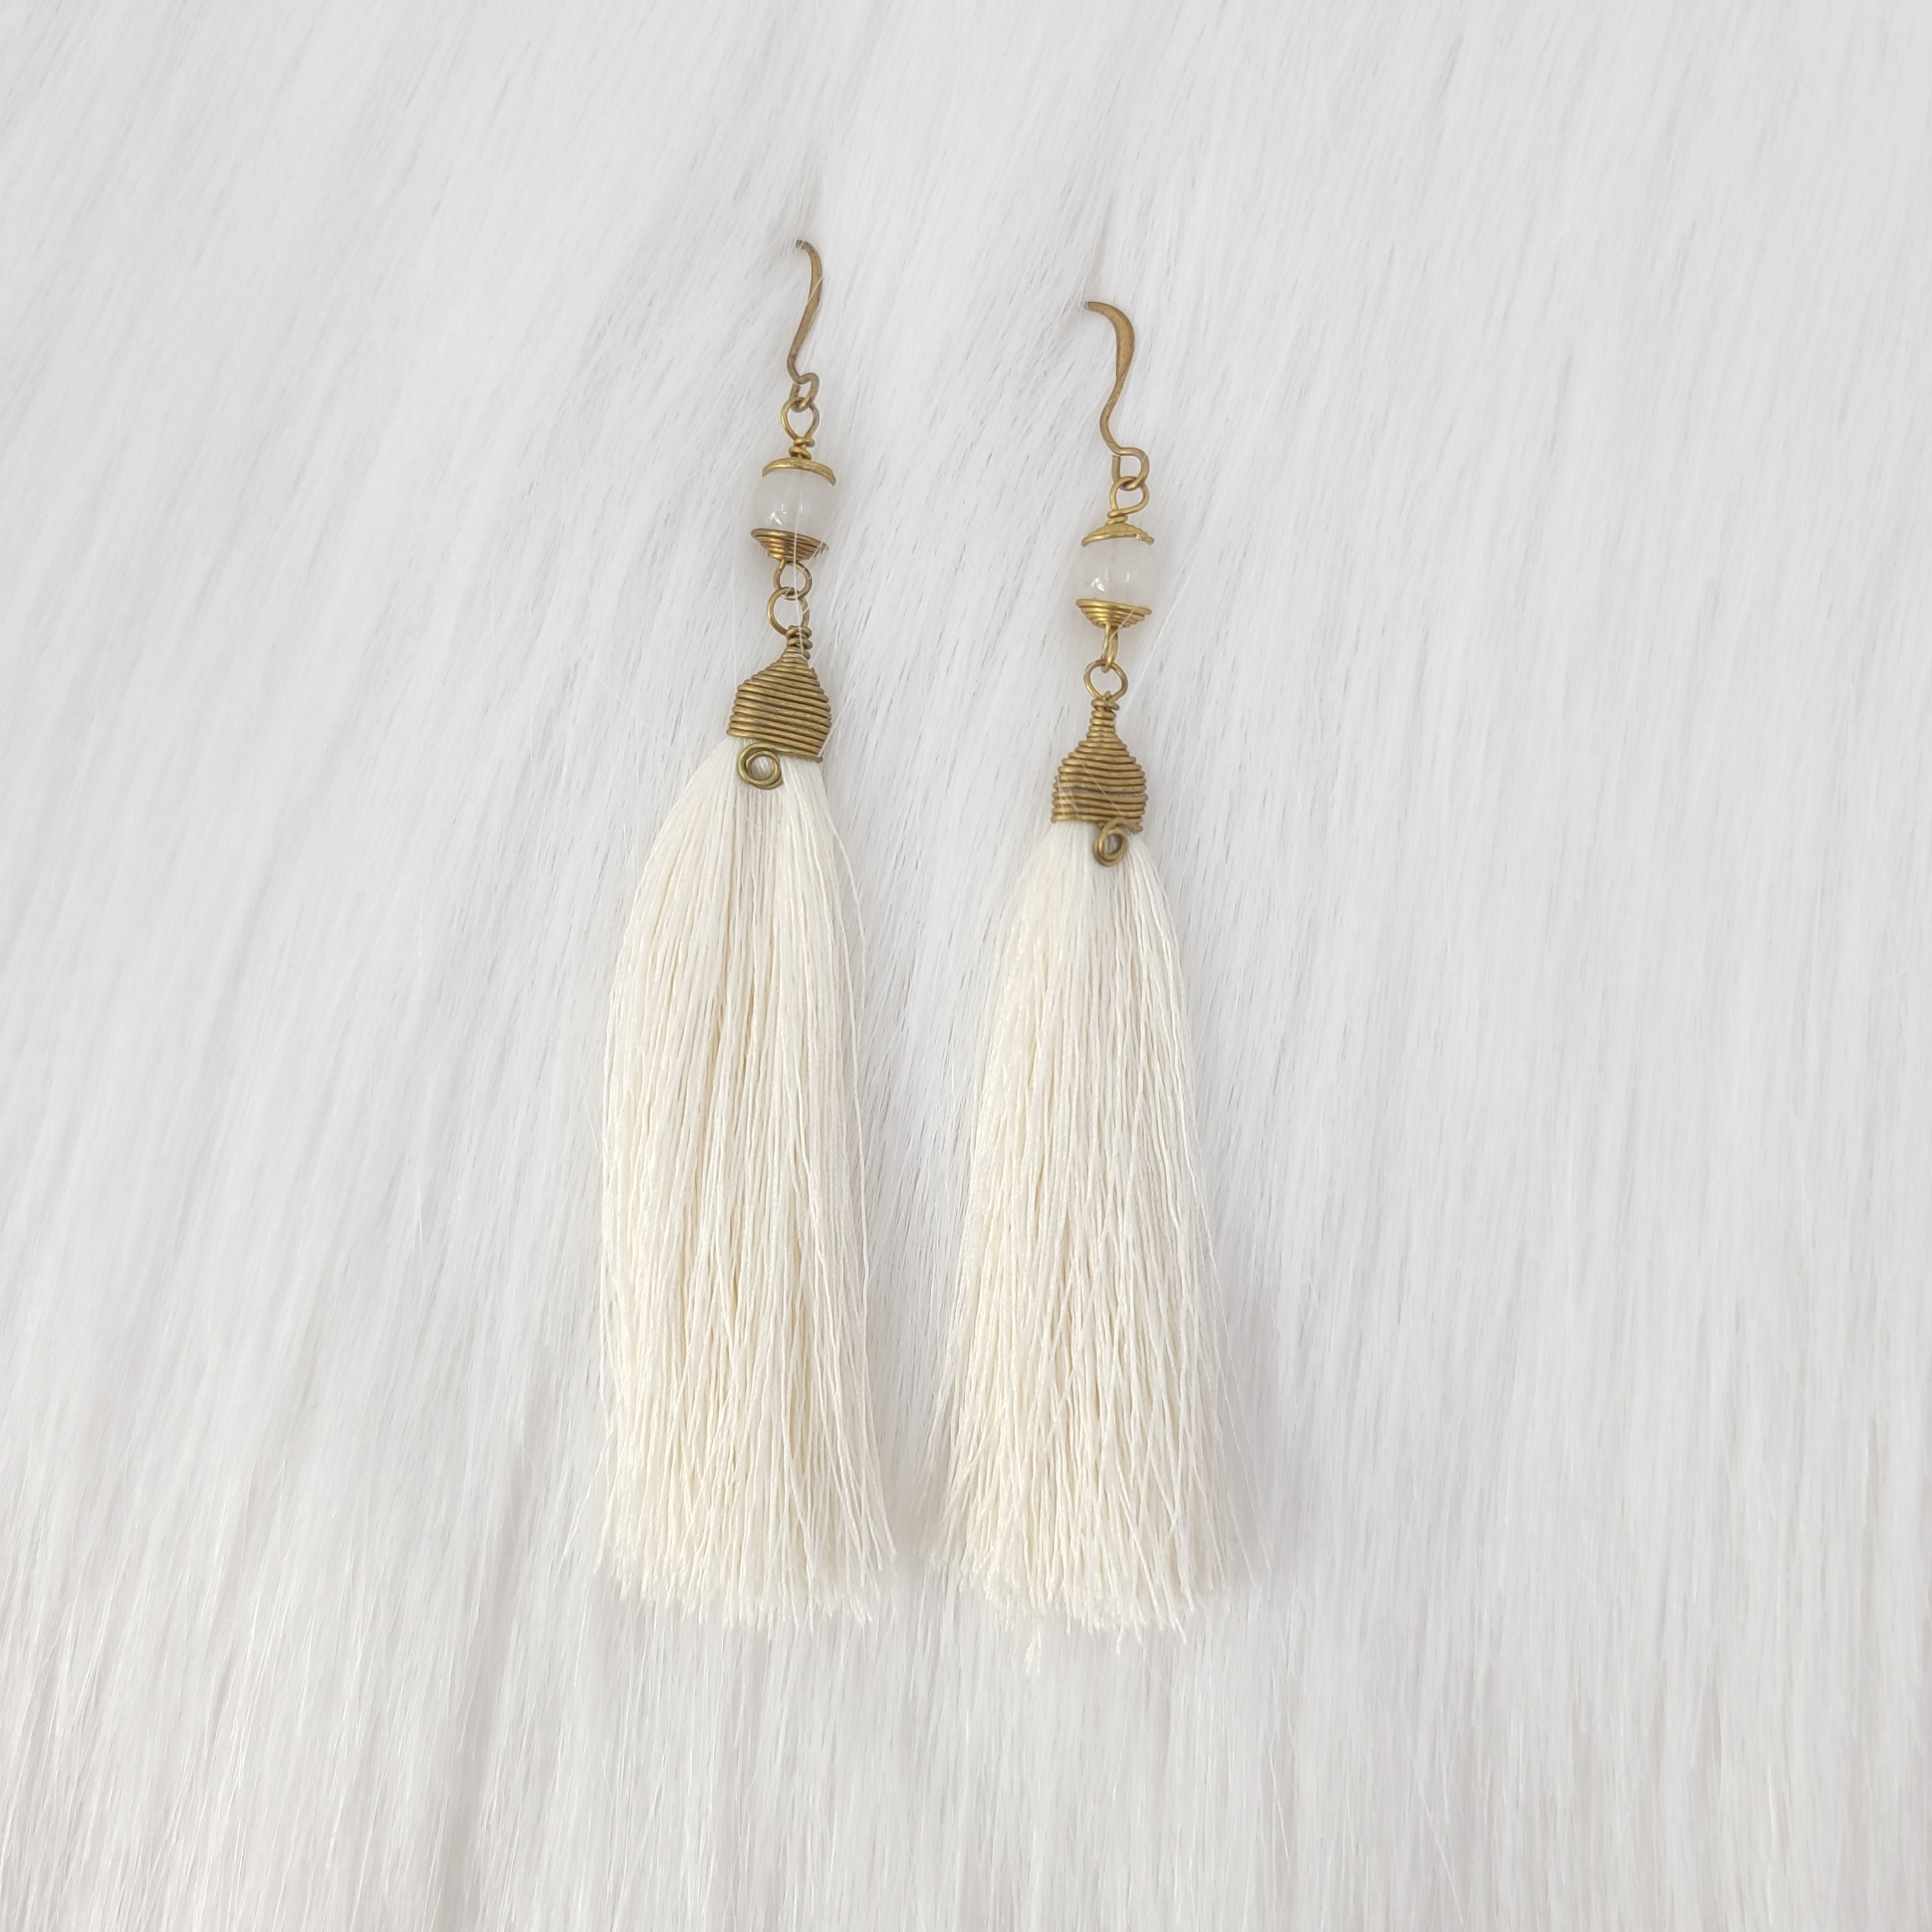 Simple Tassels earrings with Crystal Beads